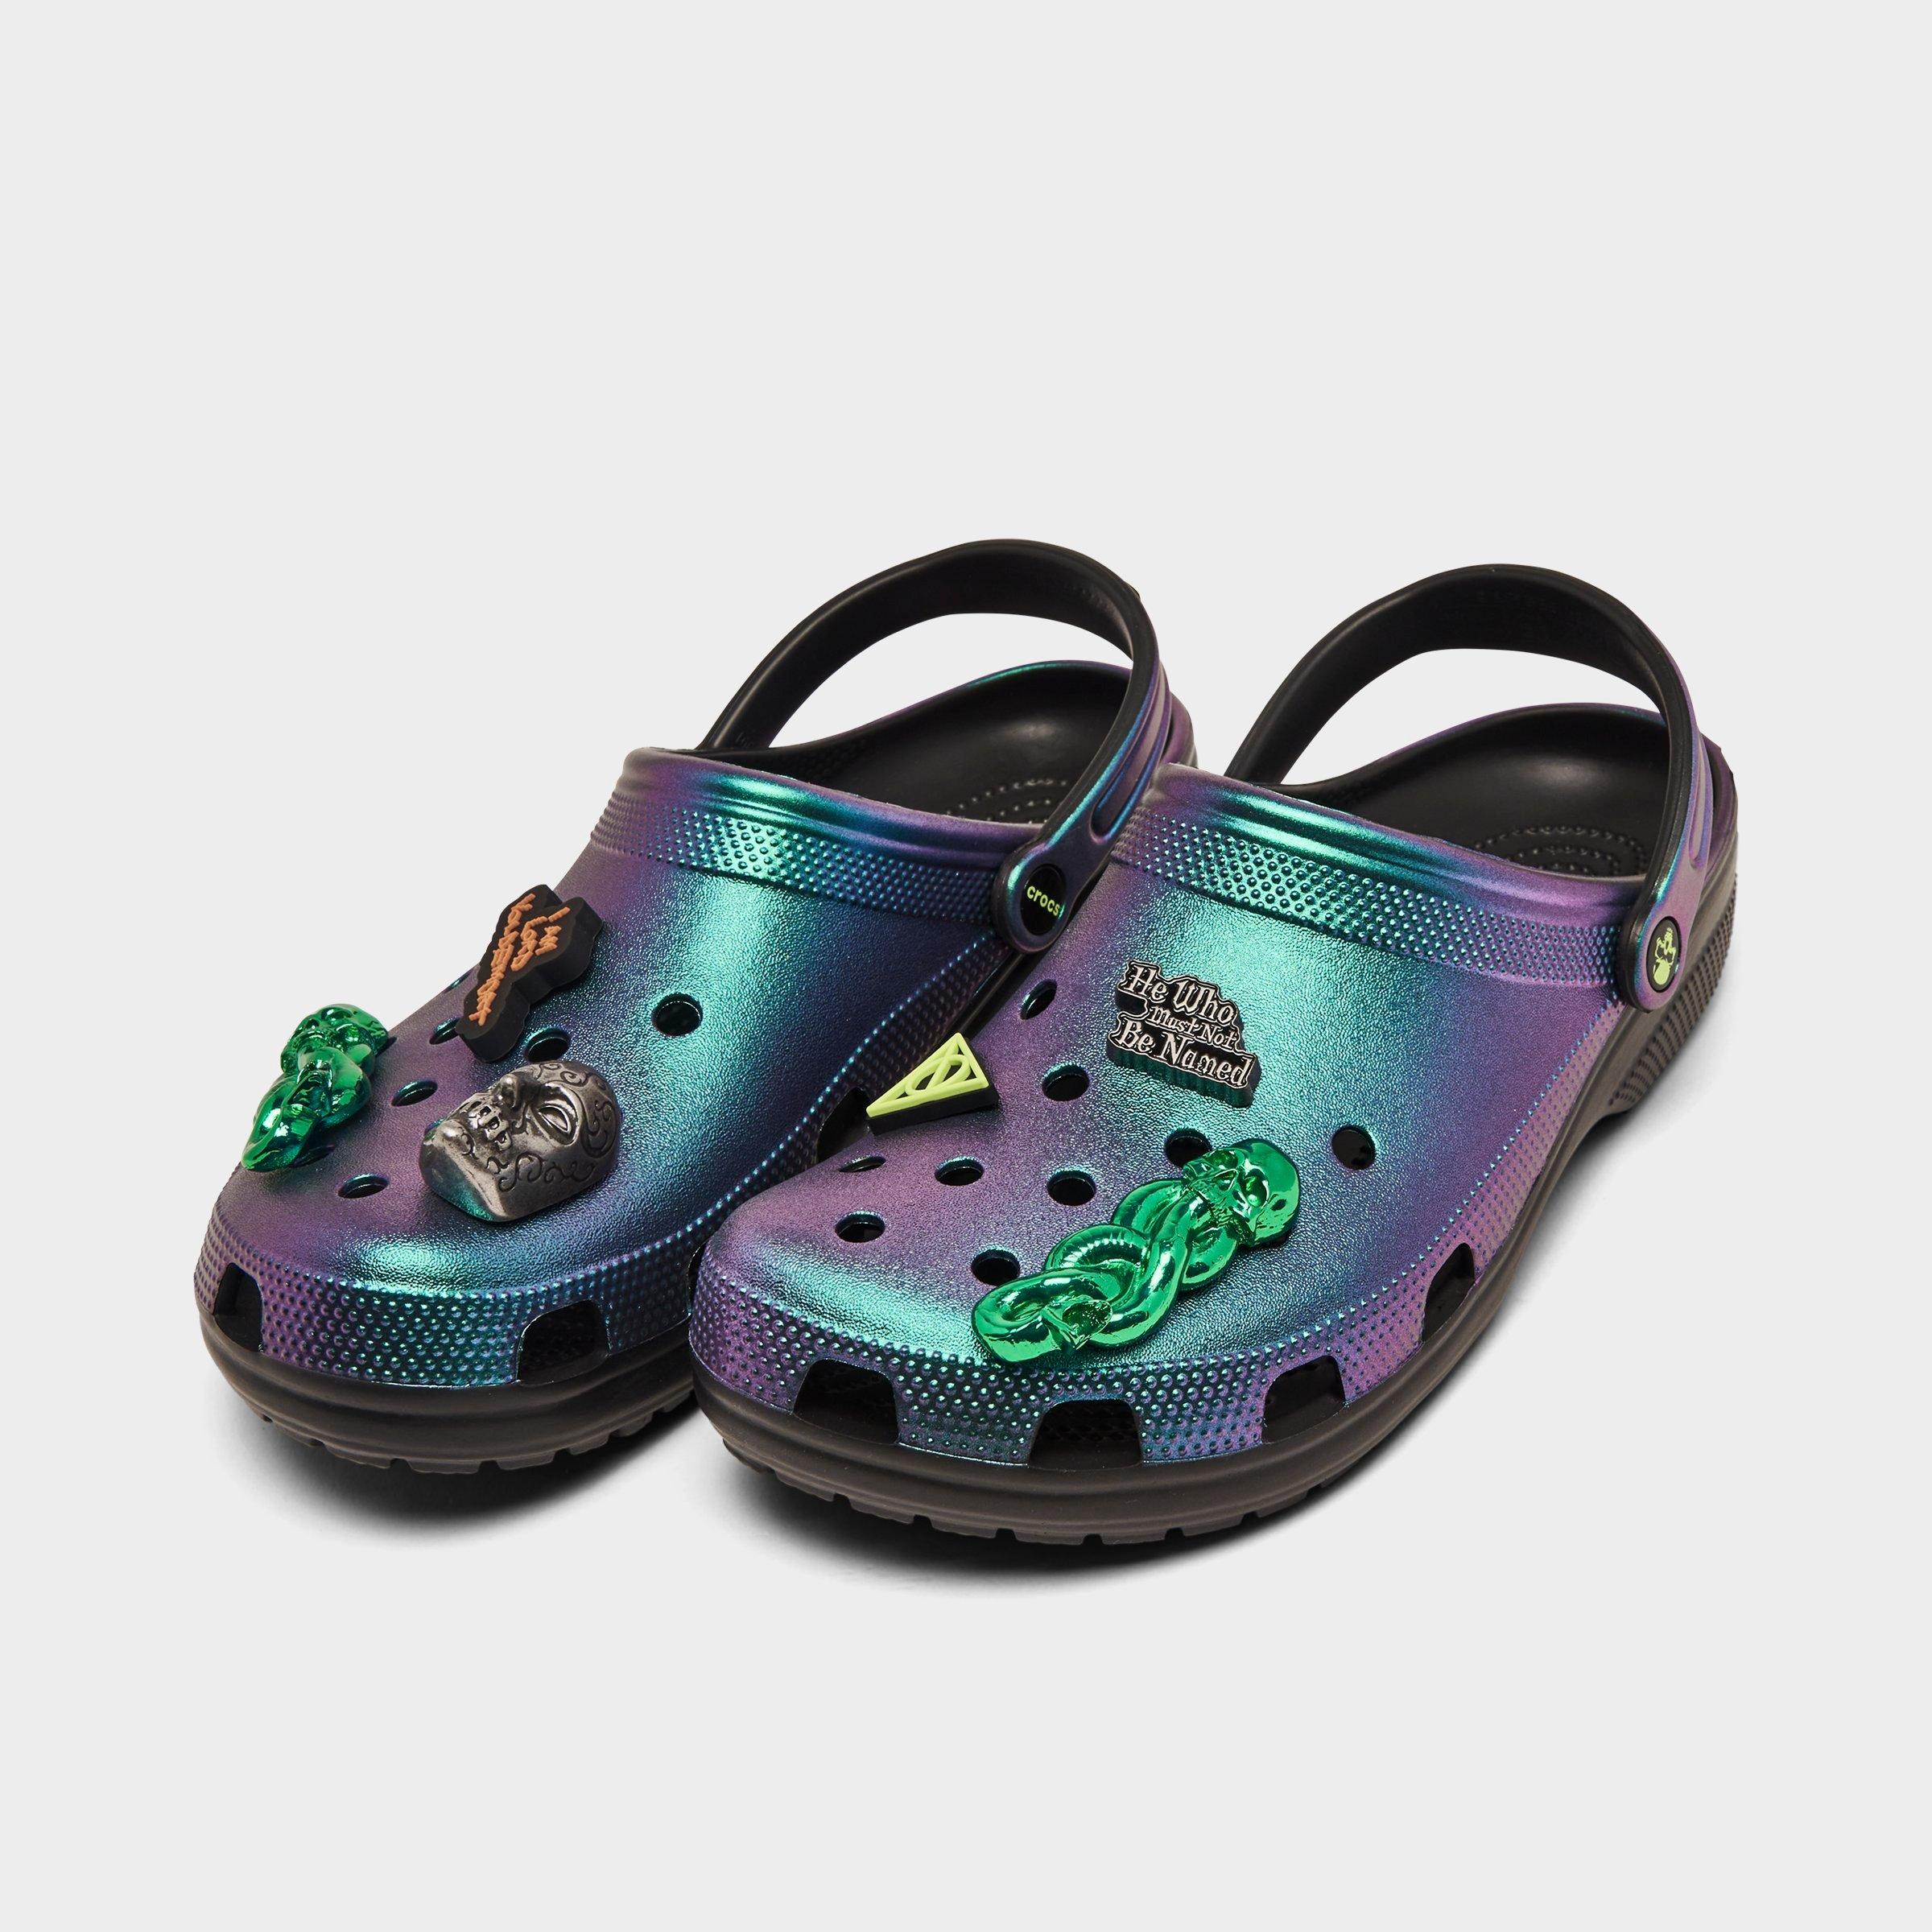 Crocs x Harry Potter Classic Clog Shoes